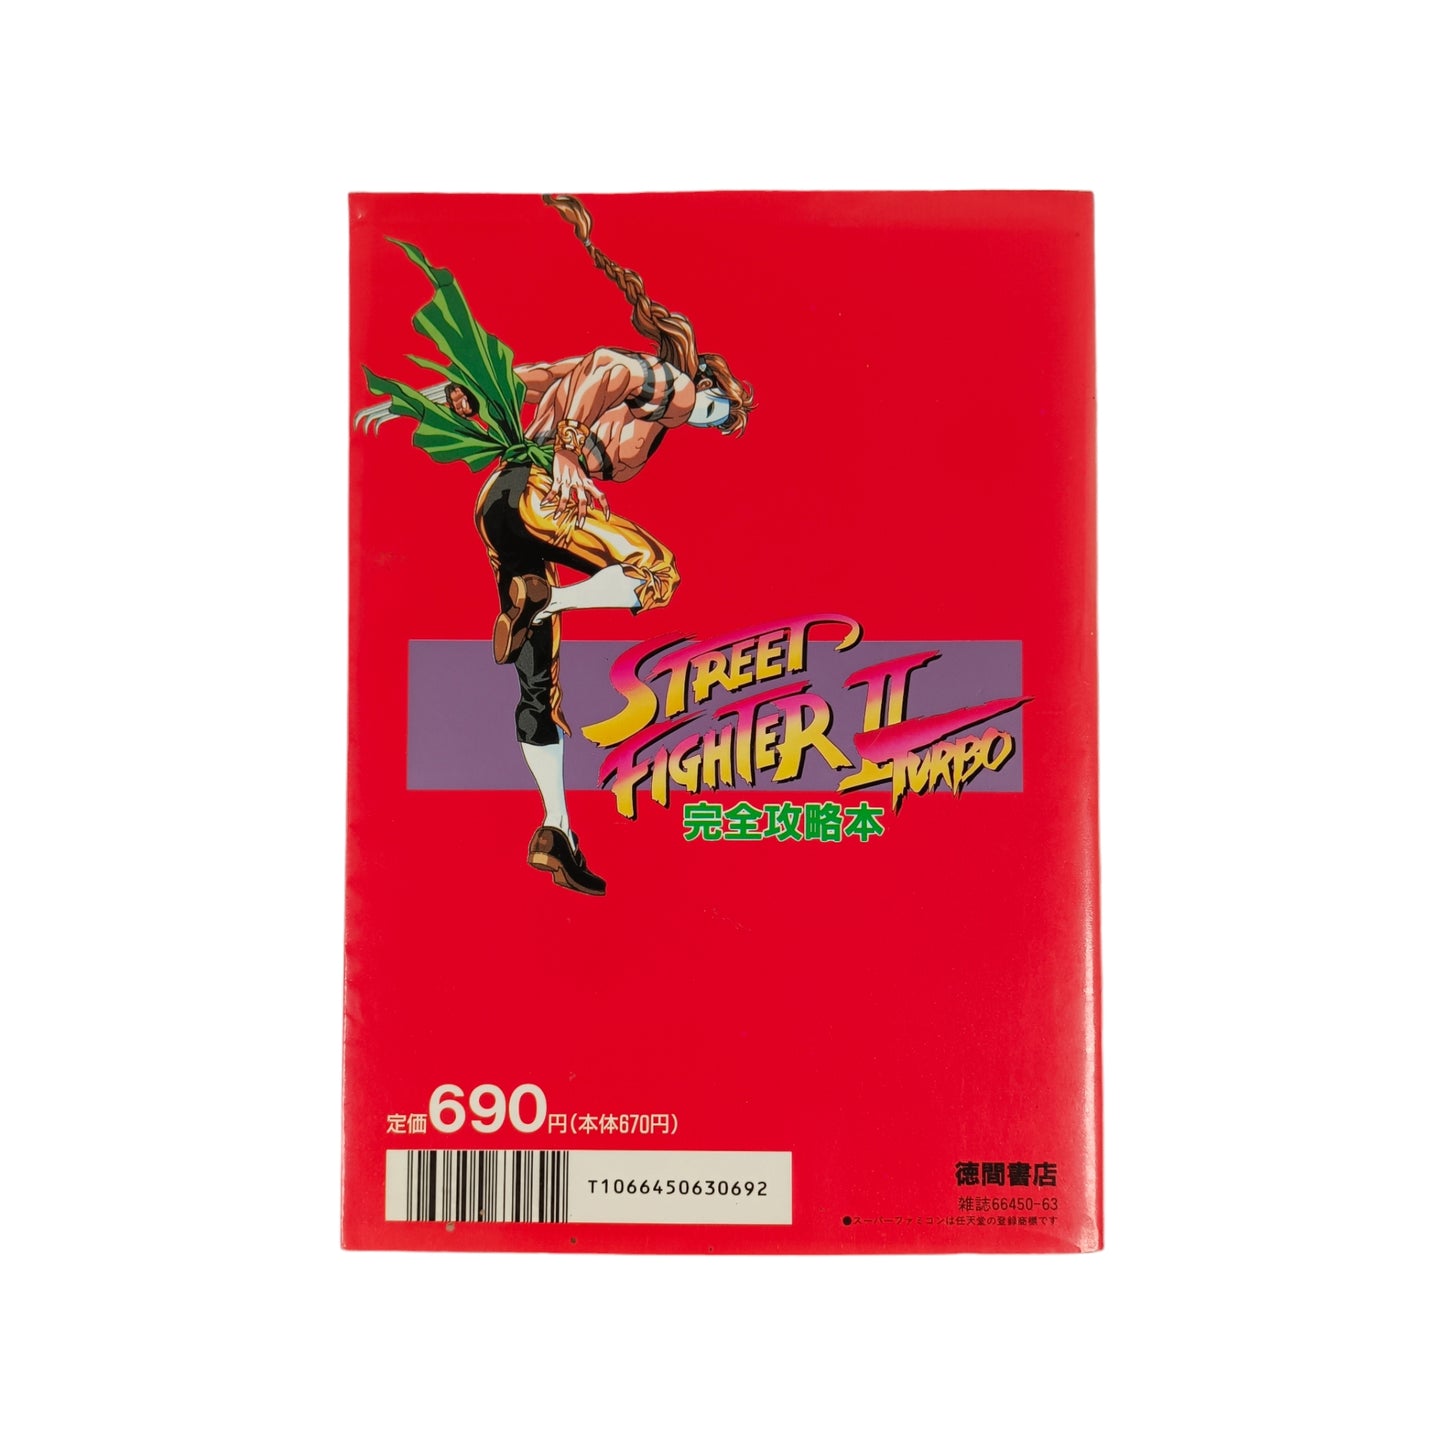 Guide Street Fighter II Turbo